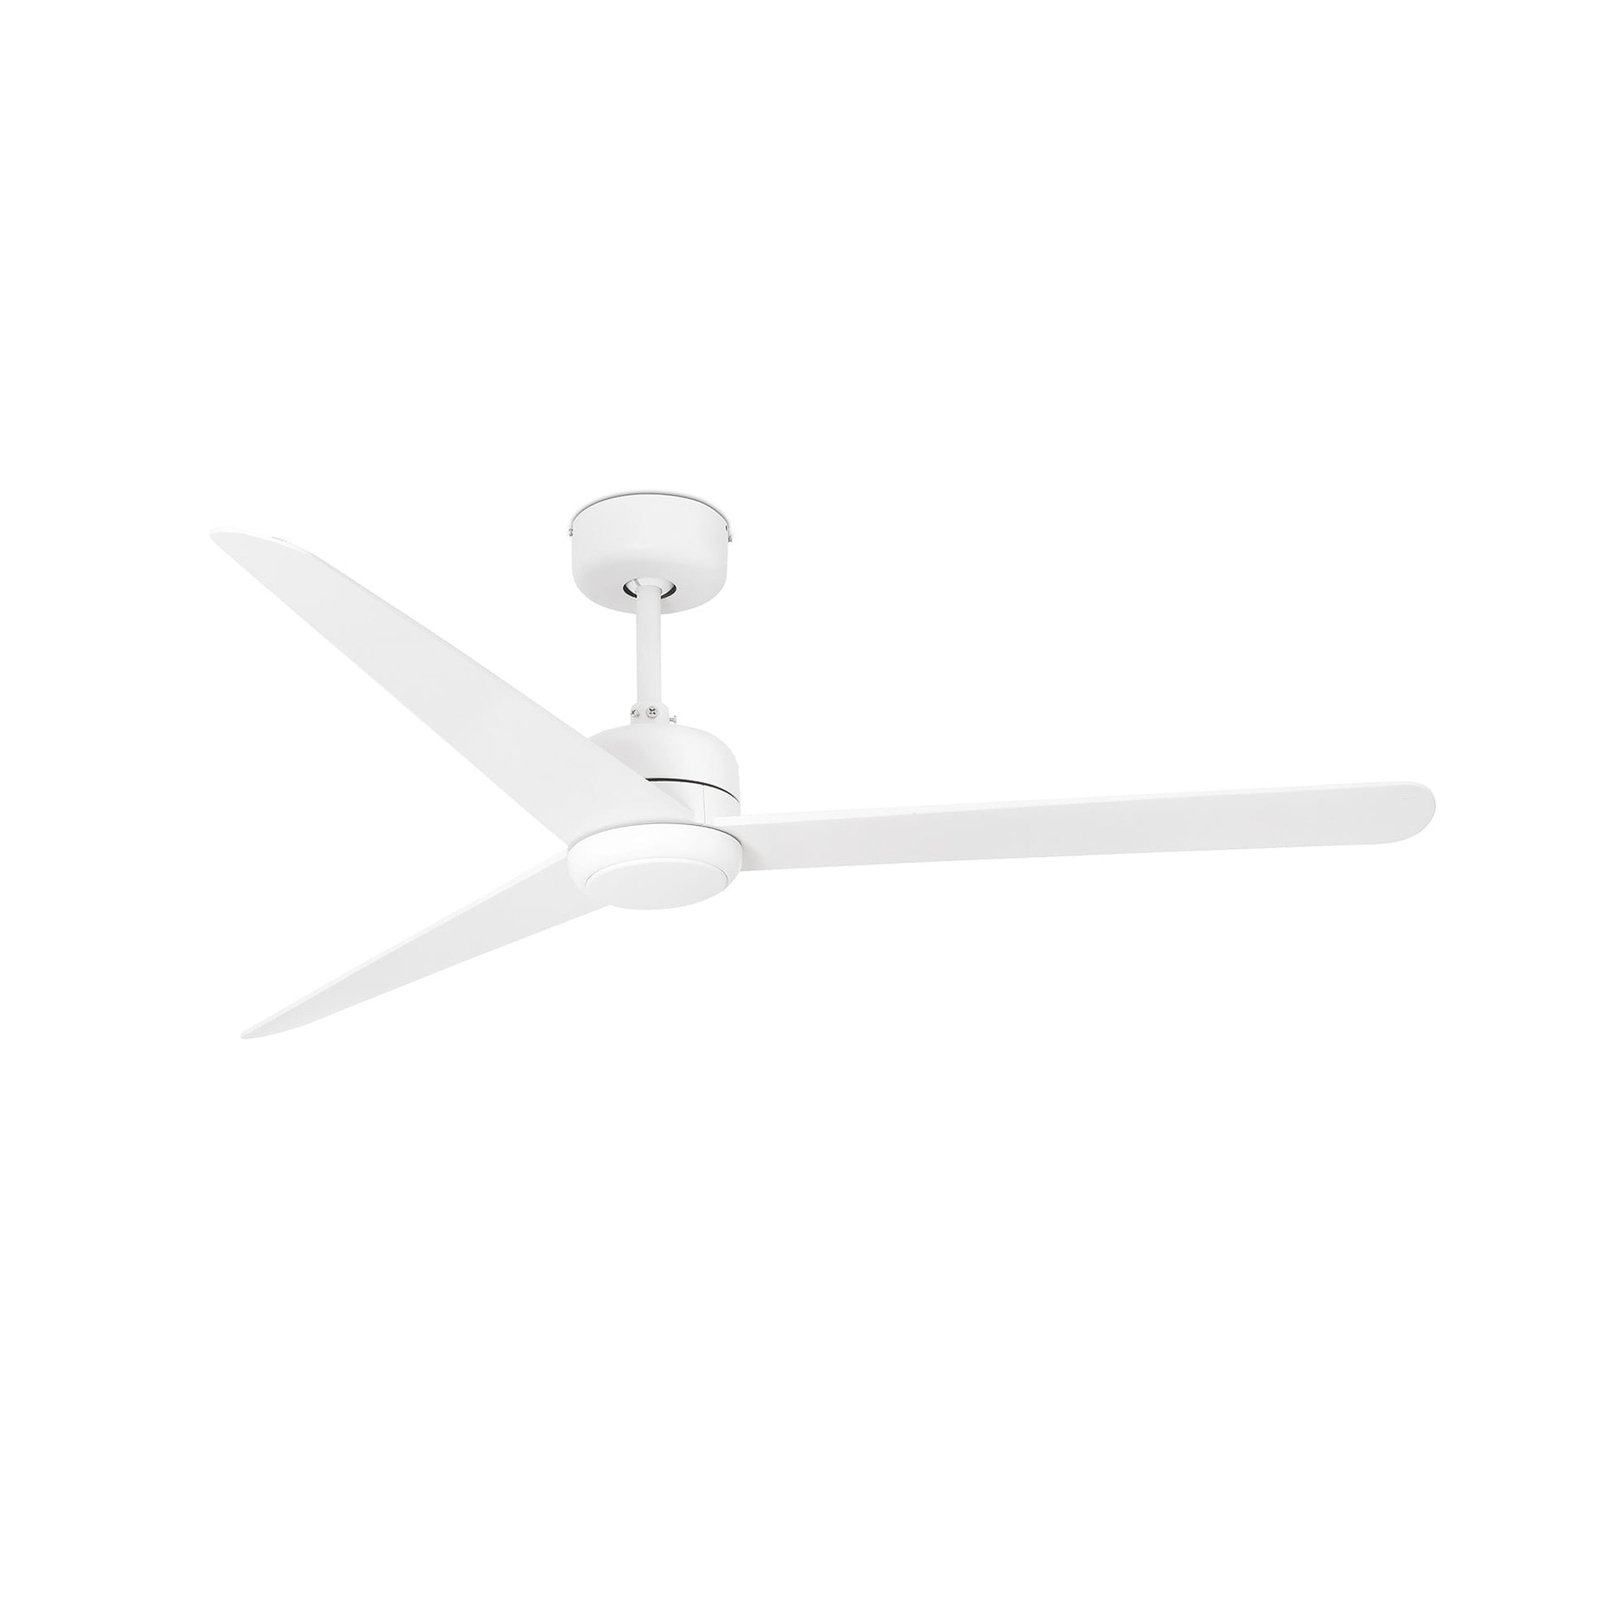 Nuu ceiling fan, three blades, white